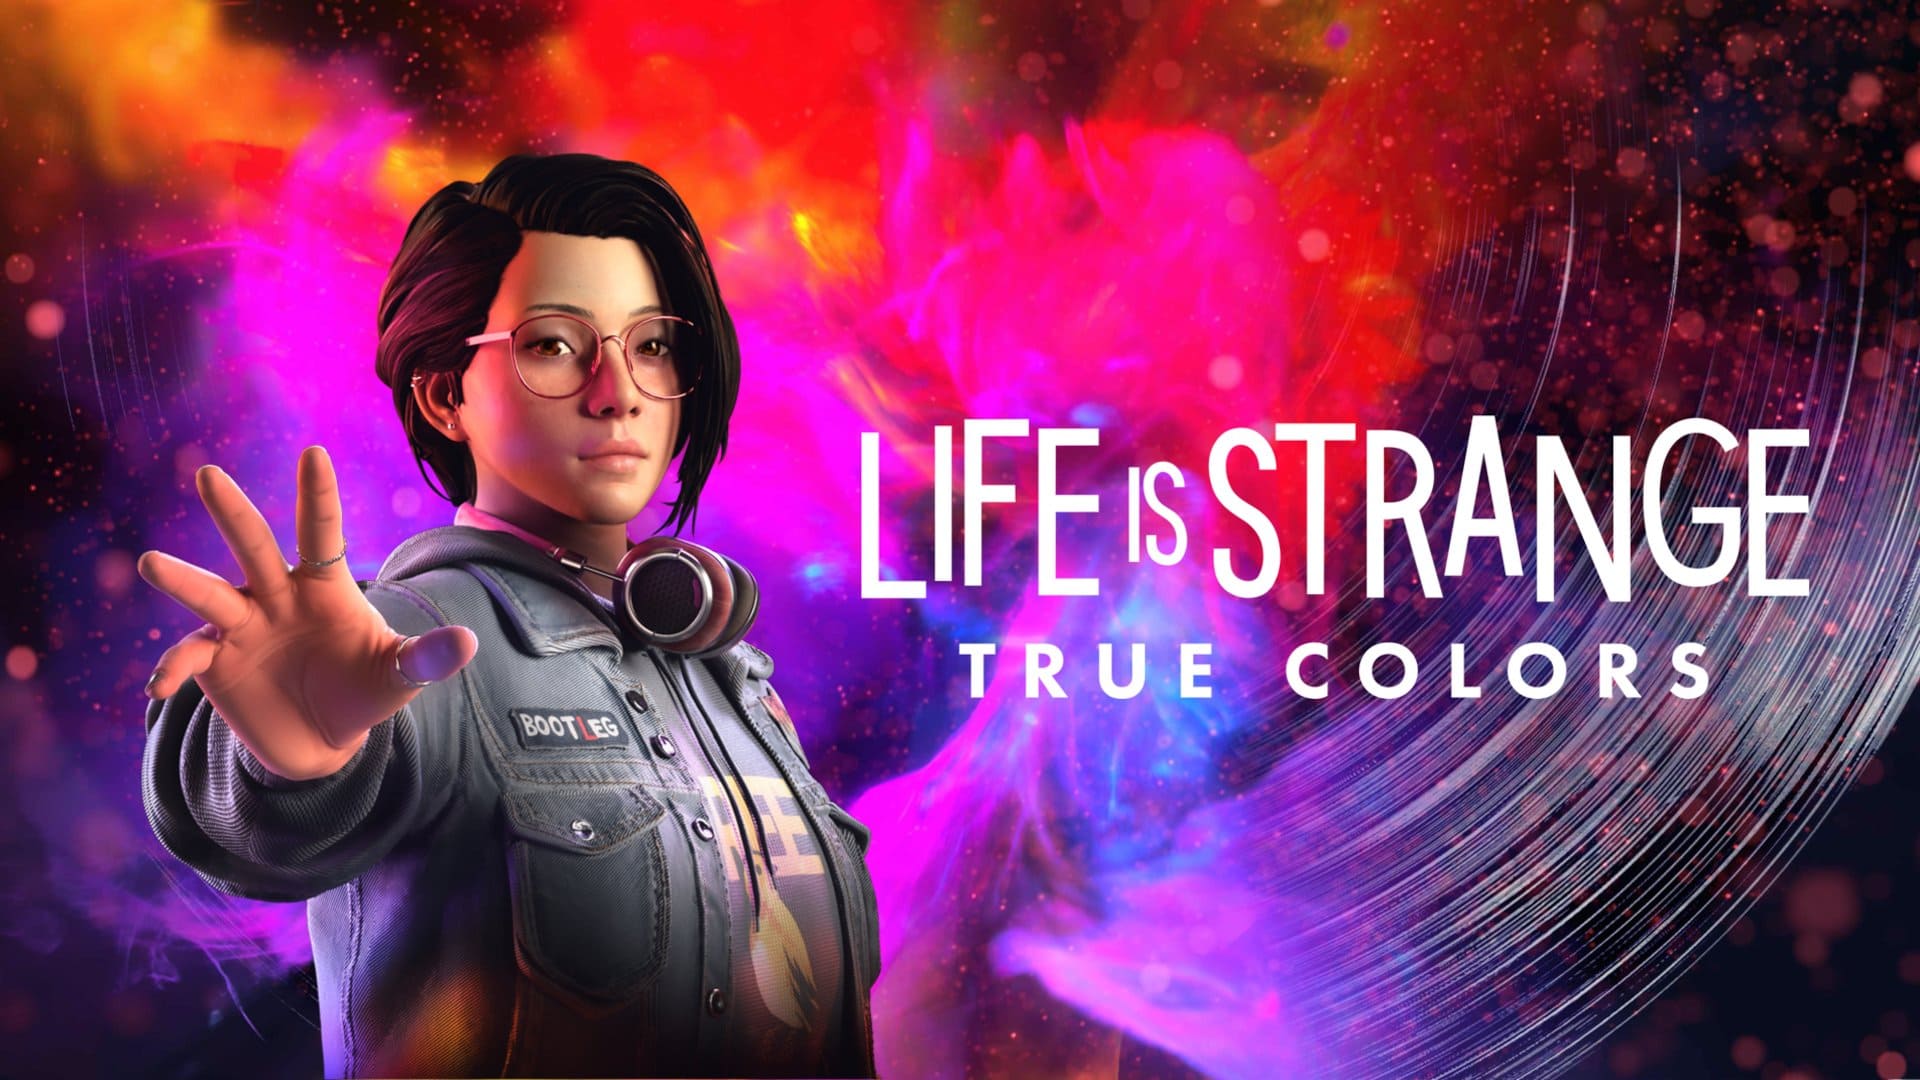 Novos jogos do Xbox Game Pass em abril: Life is Strange True